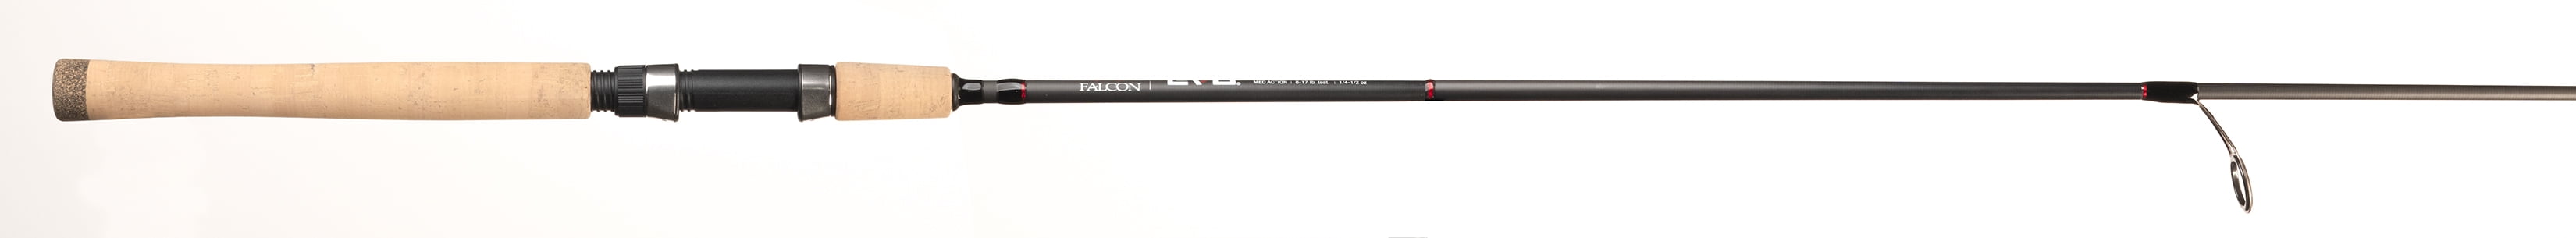 Falcon Rods Evo 7' Medium Spinning Fishing Rod, Black